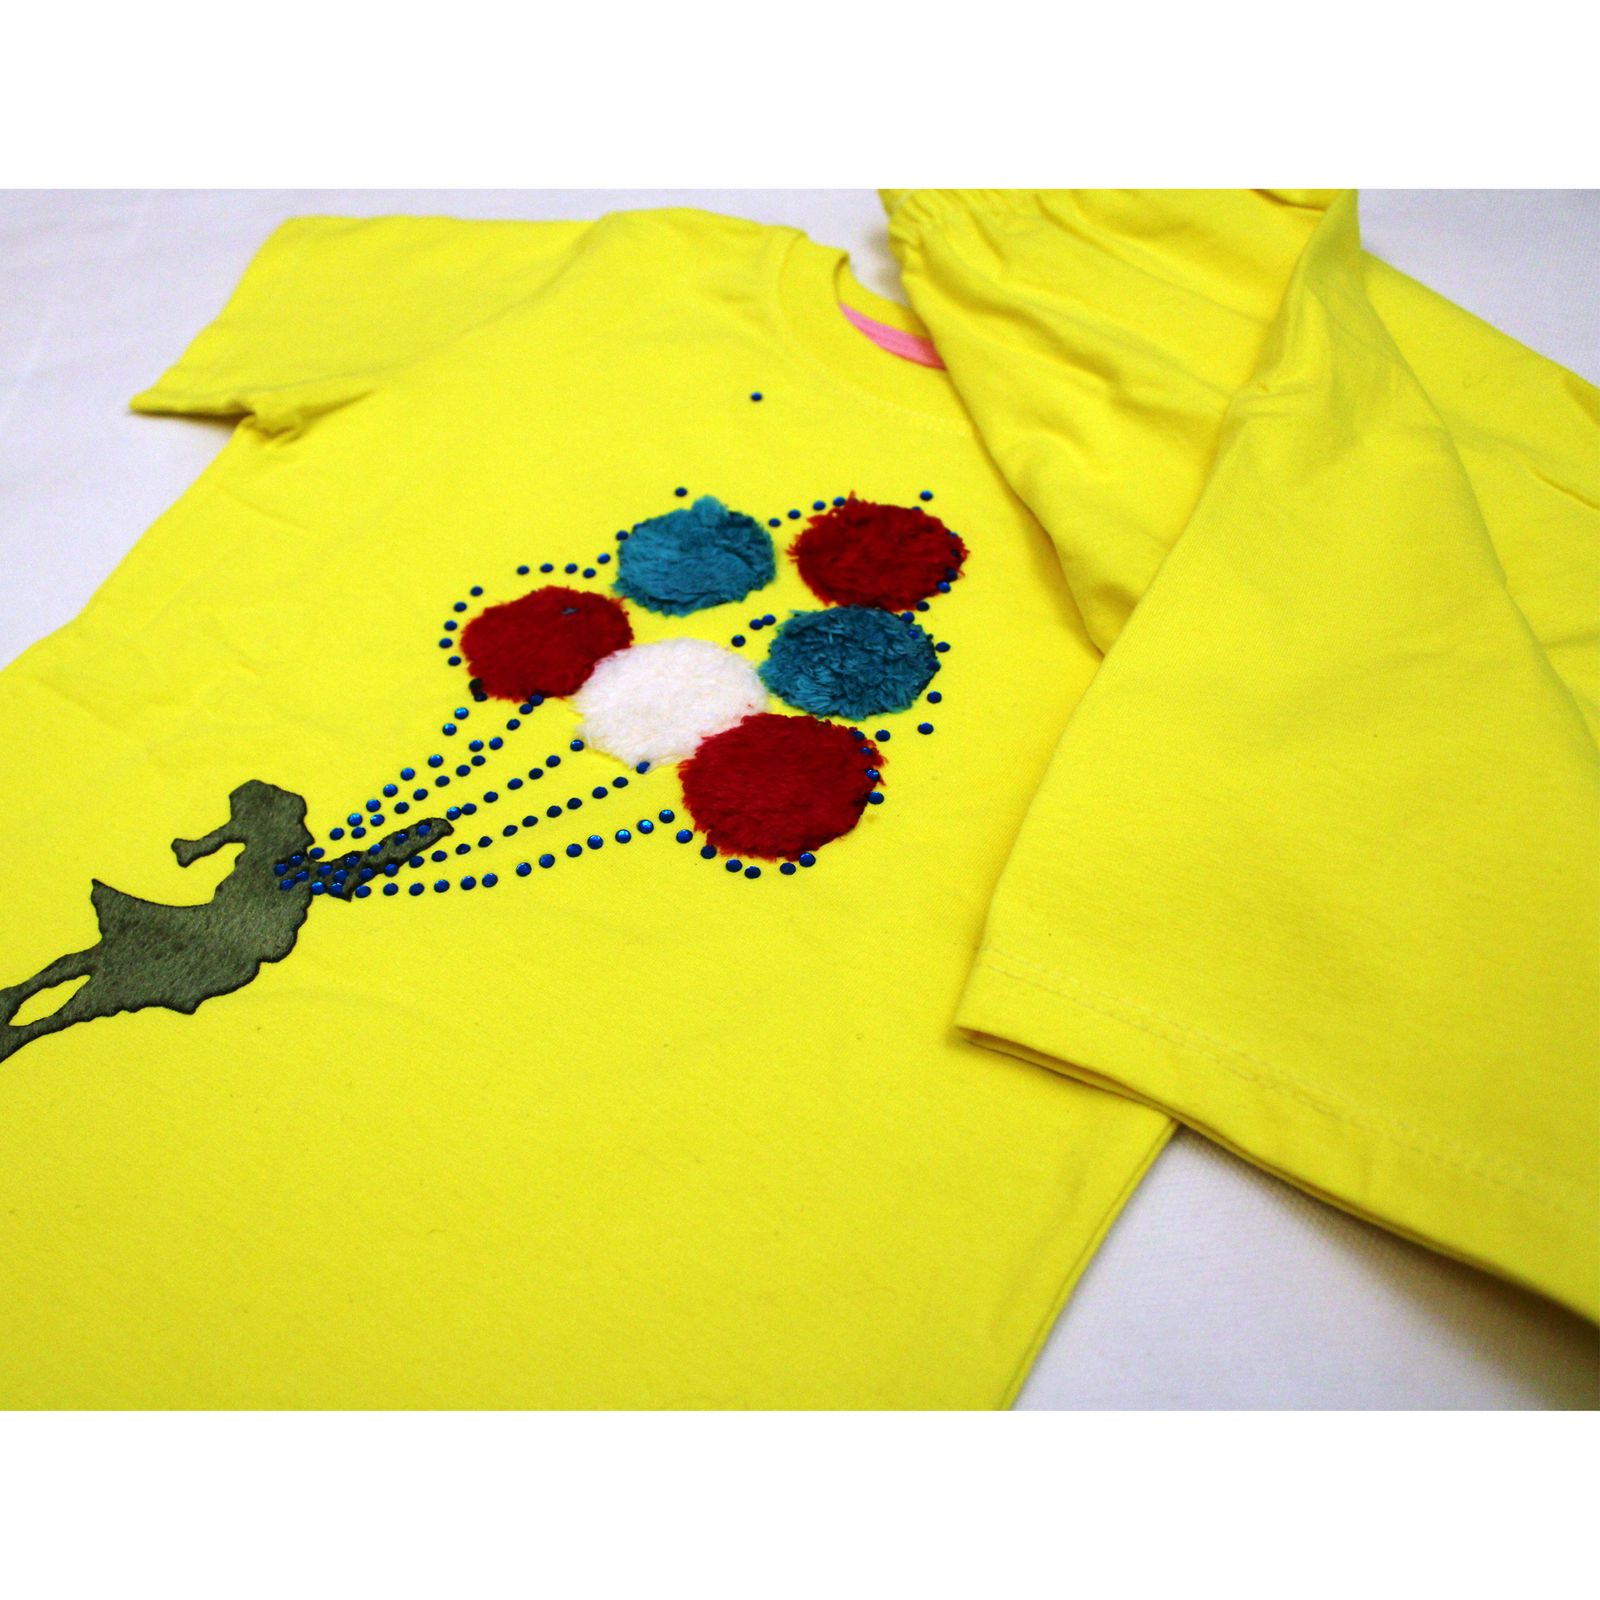 ست تی شرت و شلوارک دخترانه بانالی مدل بادکنک کد 3491 -  - 2